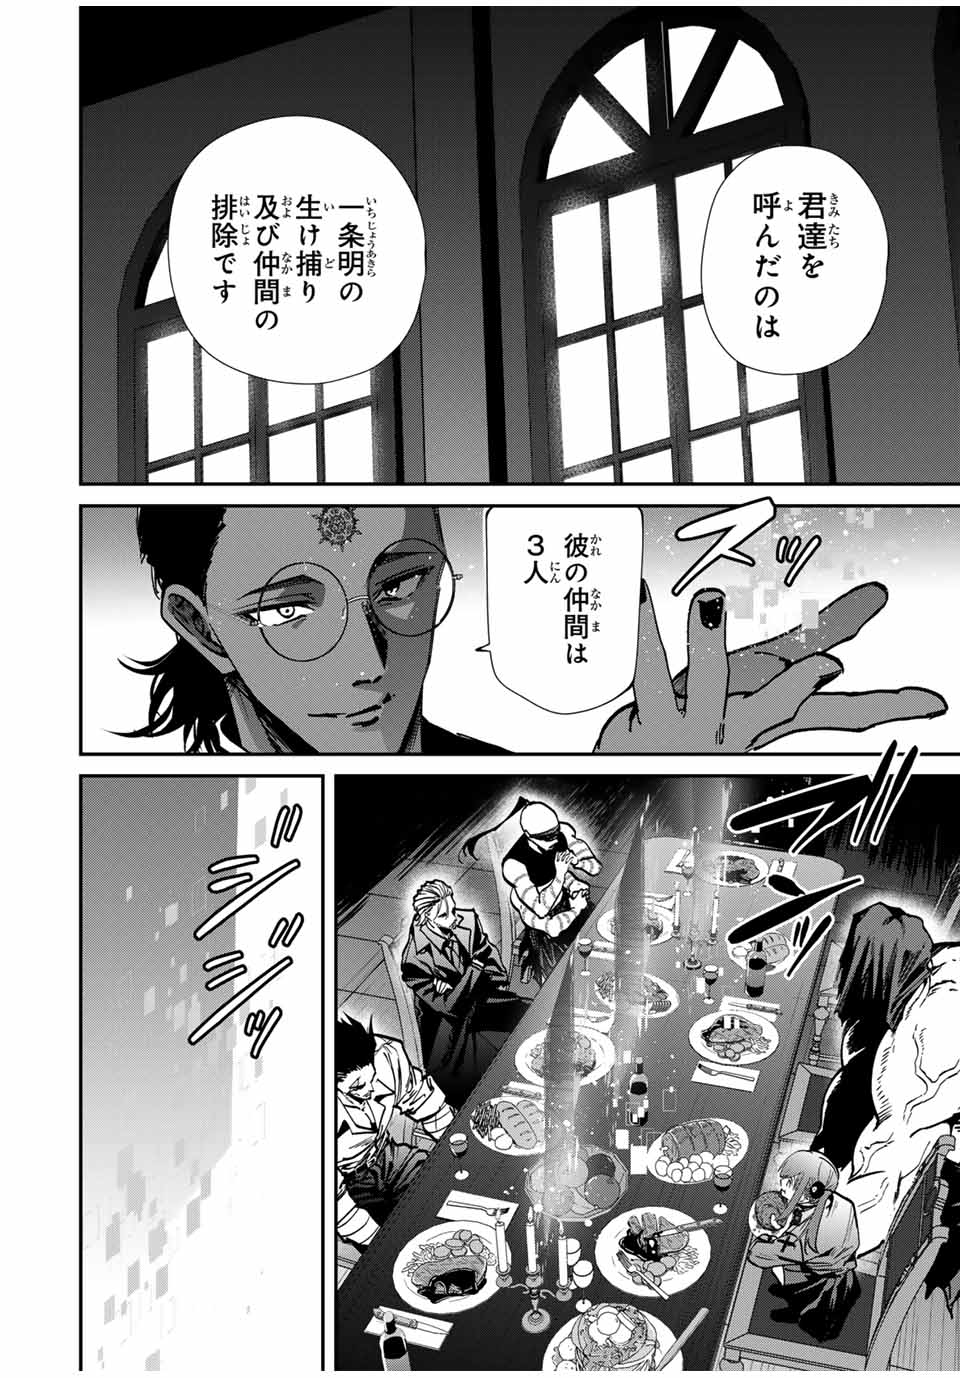 Kono Sekai ga Izure Horobu Koto wo, Ore dake ga Shitte Iru - Chapter 70 - Page 2